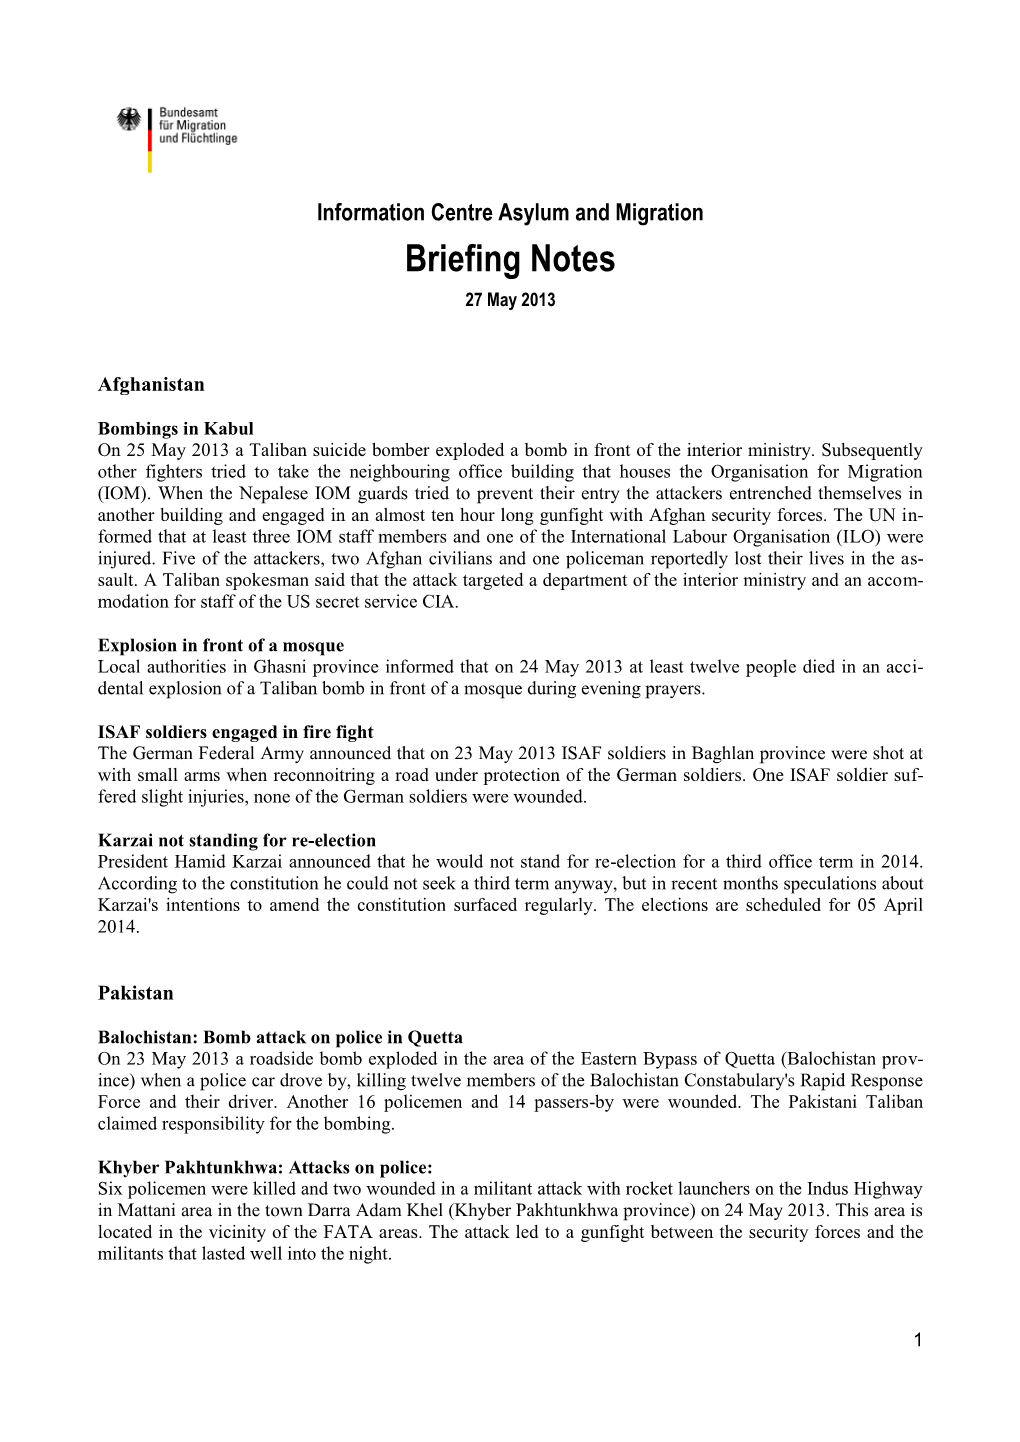 Briefing Notes 27 May 2013